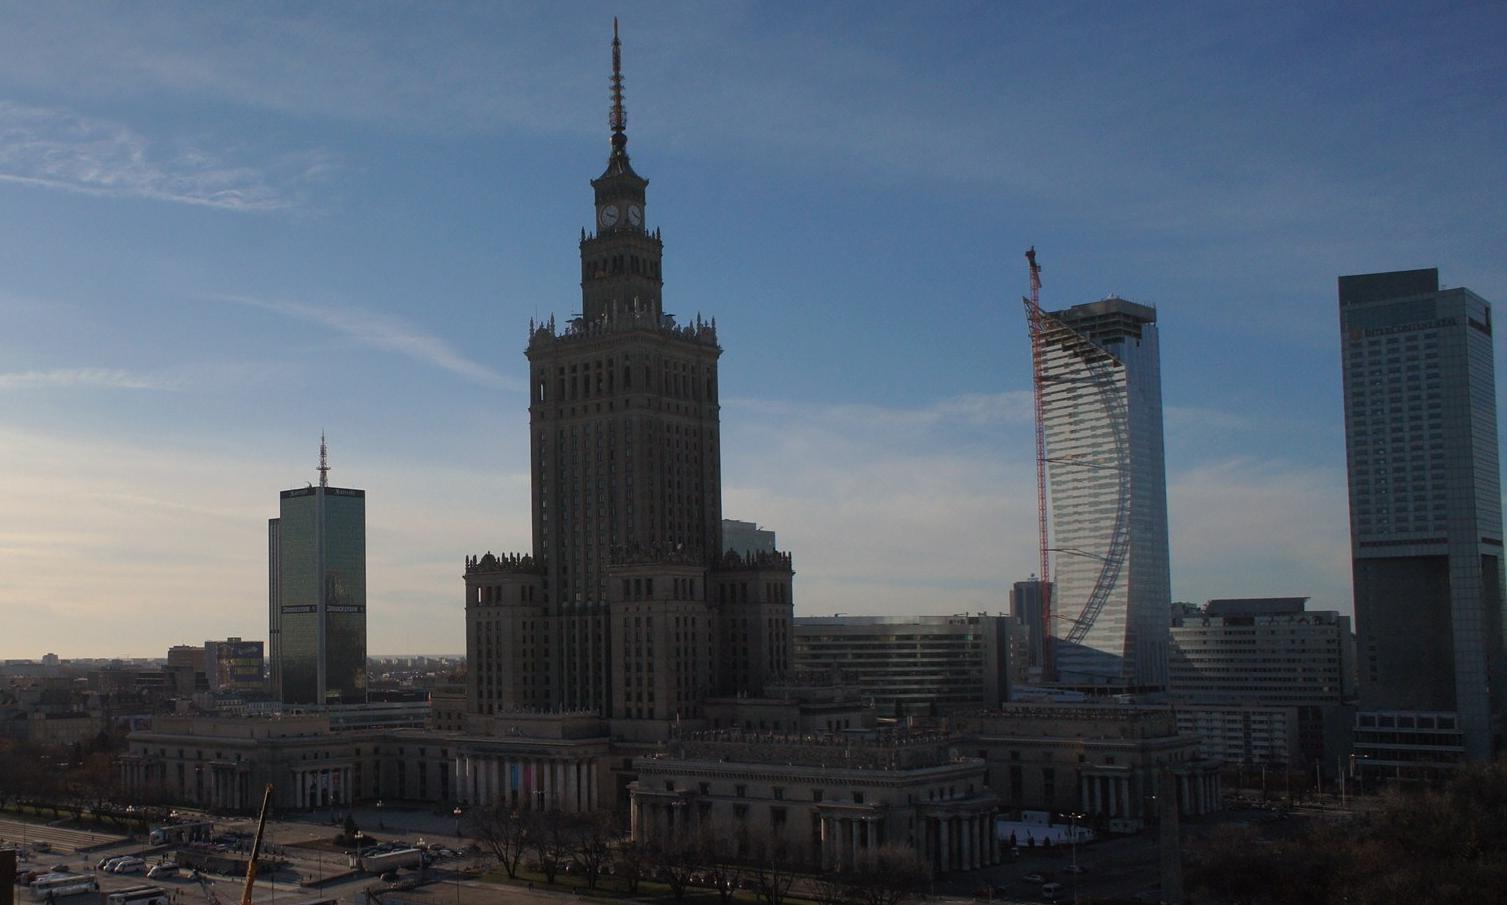 Panorama centrum Warszawy - widok na PKiN